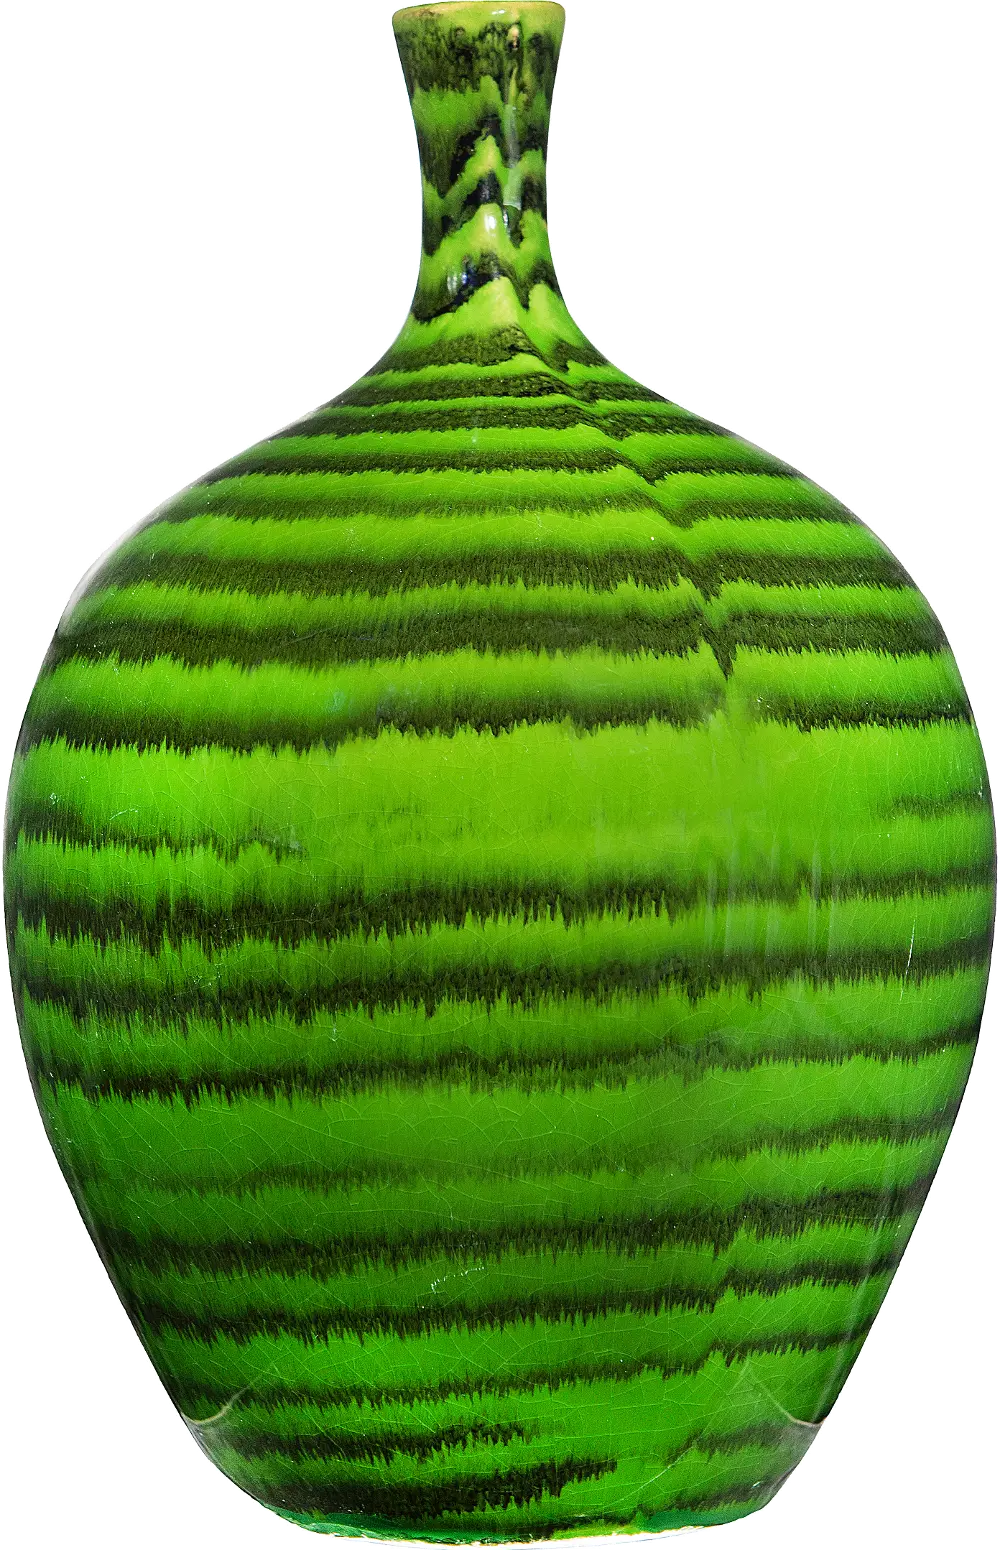 DF1820/MALACHITEVASE 9 Inch Green Stoneware Vase with Malachite Glaze-1